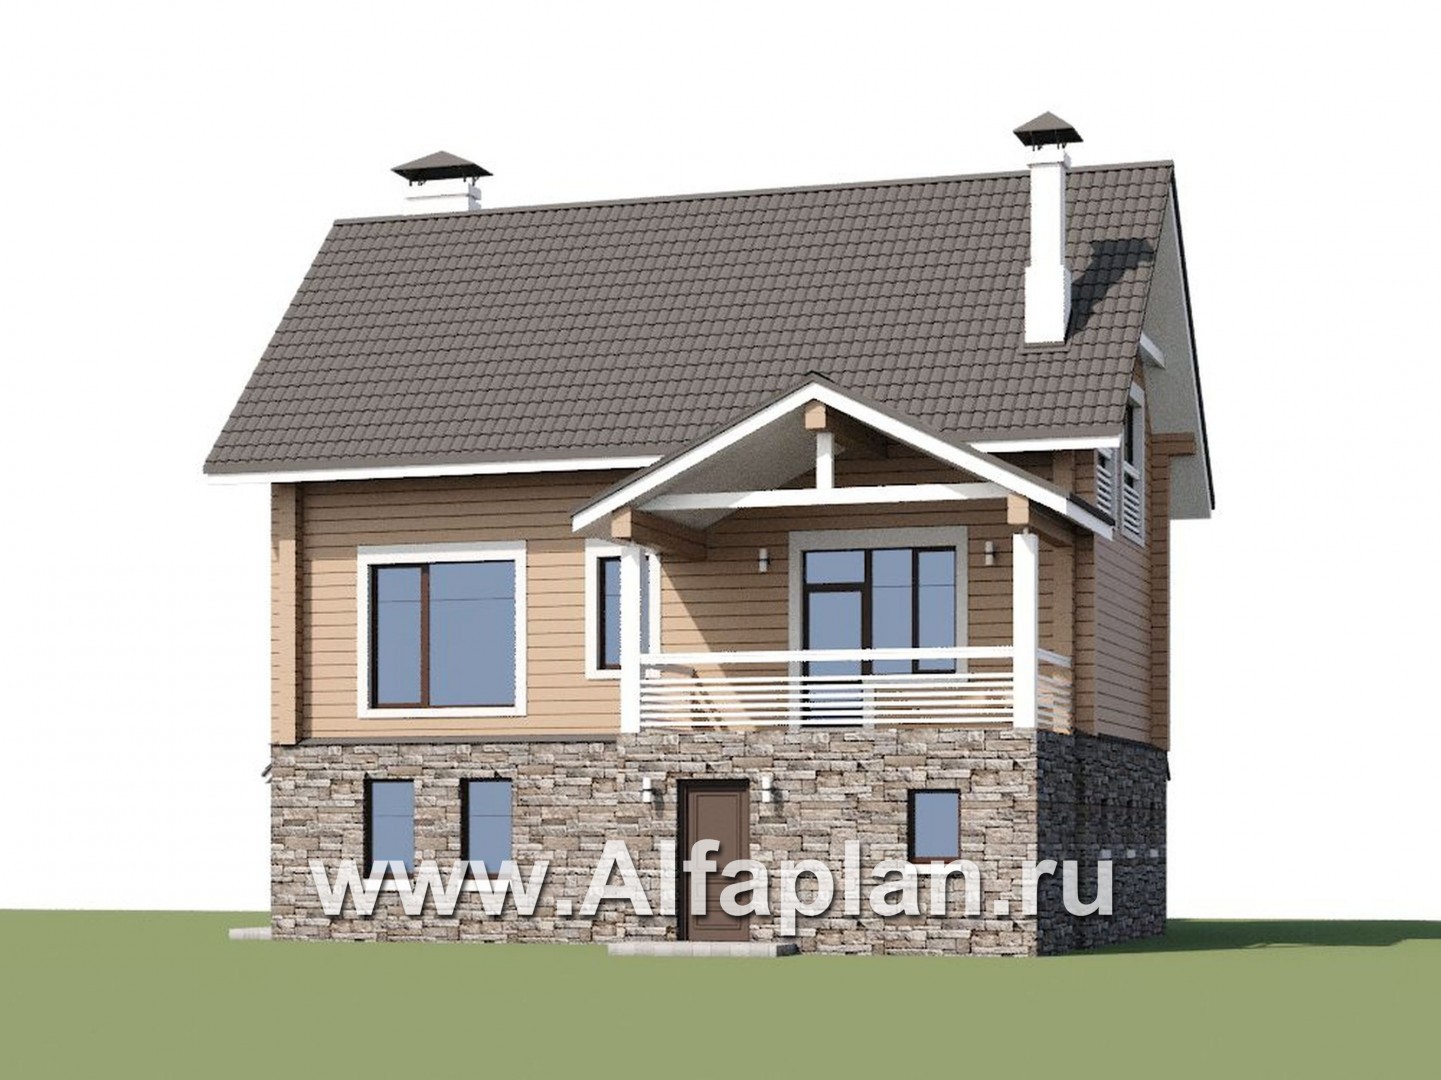 Проекты домов Альфаплан - «АльфаВУД» - дополнительное изображение №1